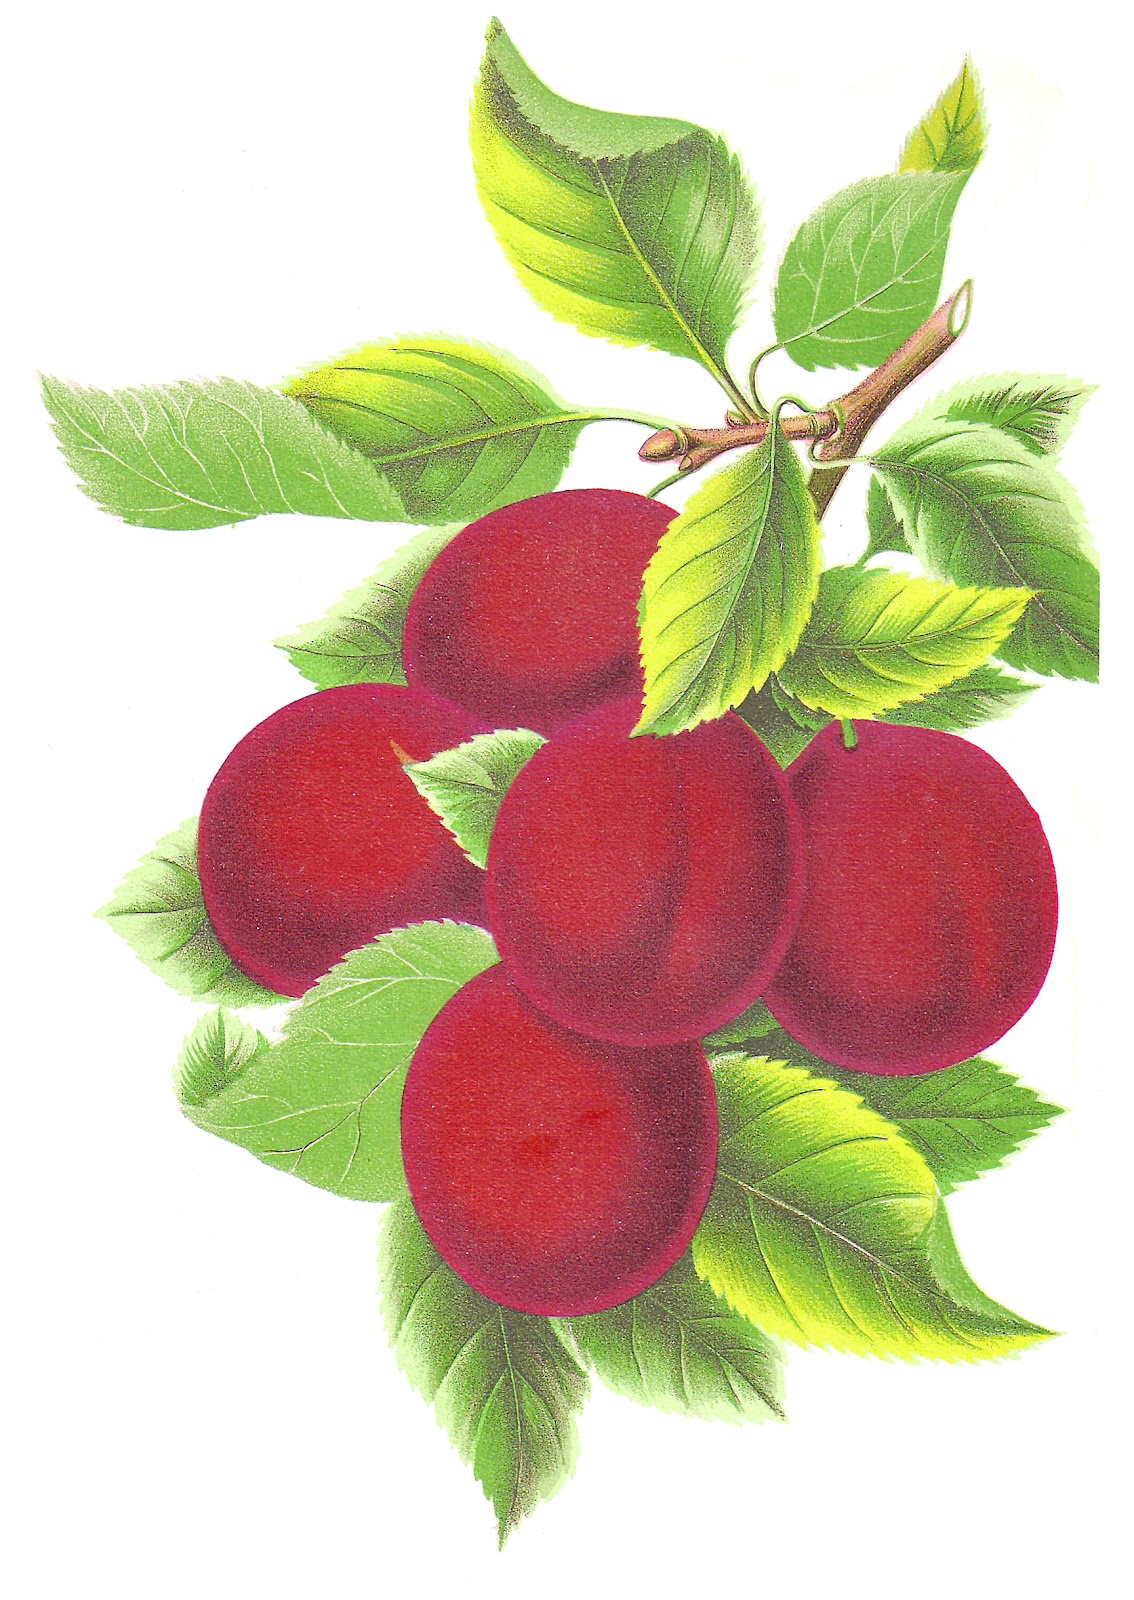 Antique Images: Free Fruit Clip Art: Vintage Illustration of 